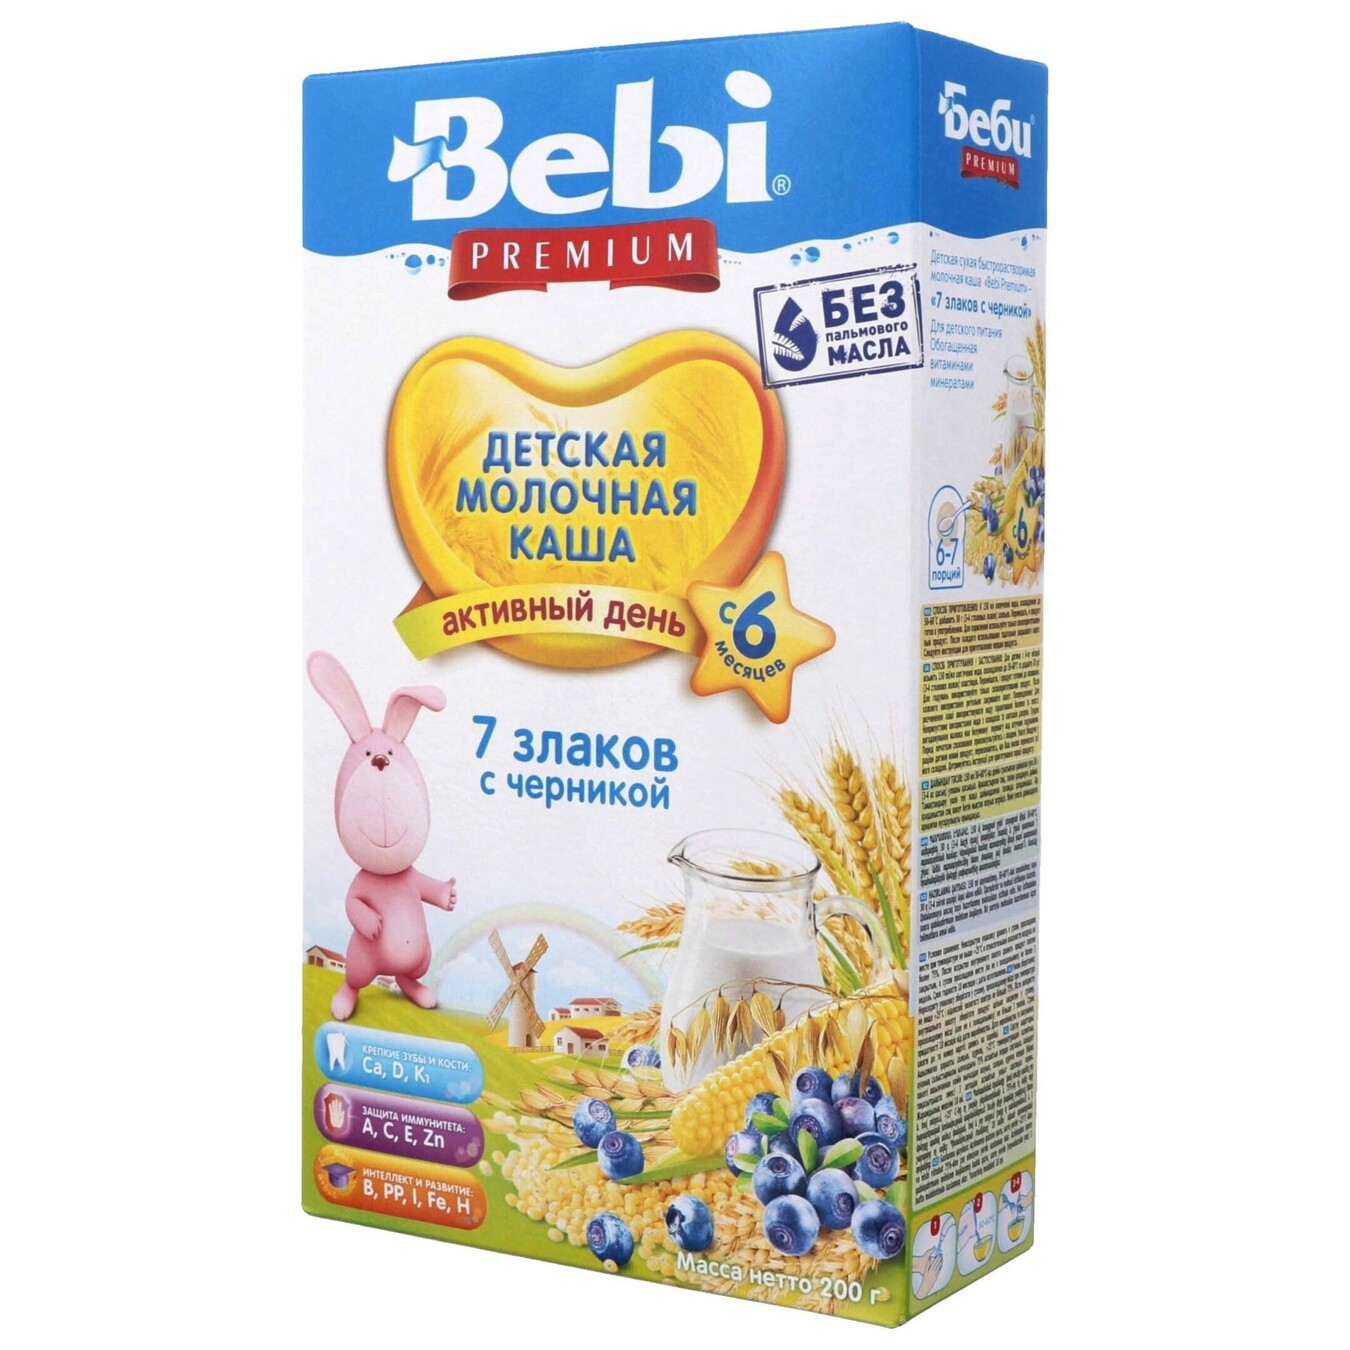 Bebi Premium milk porridge 7 cereals with blueberries 200g 2